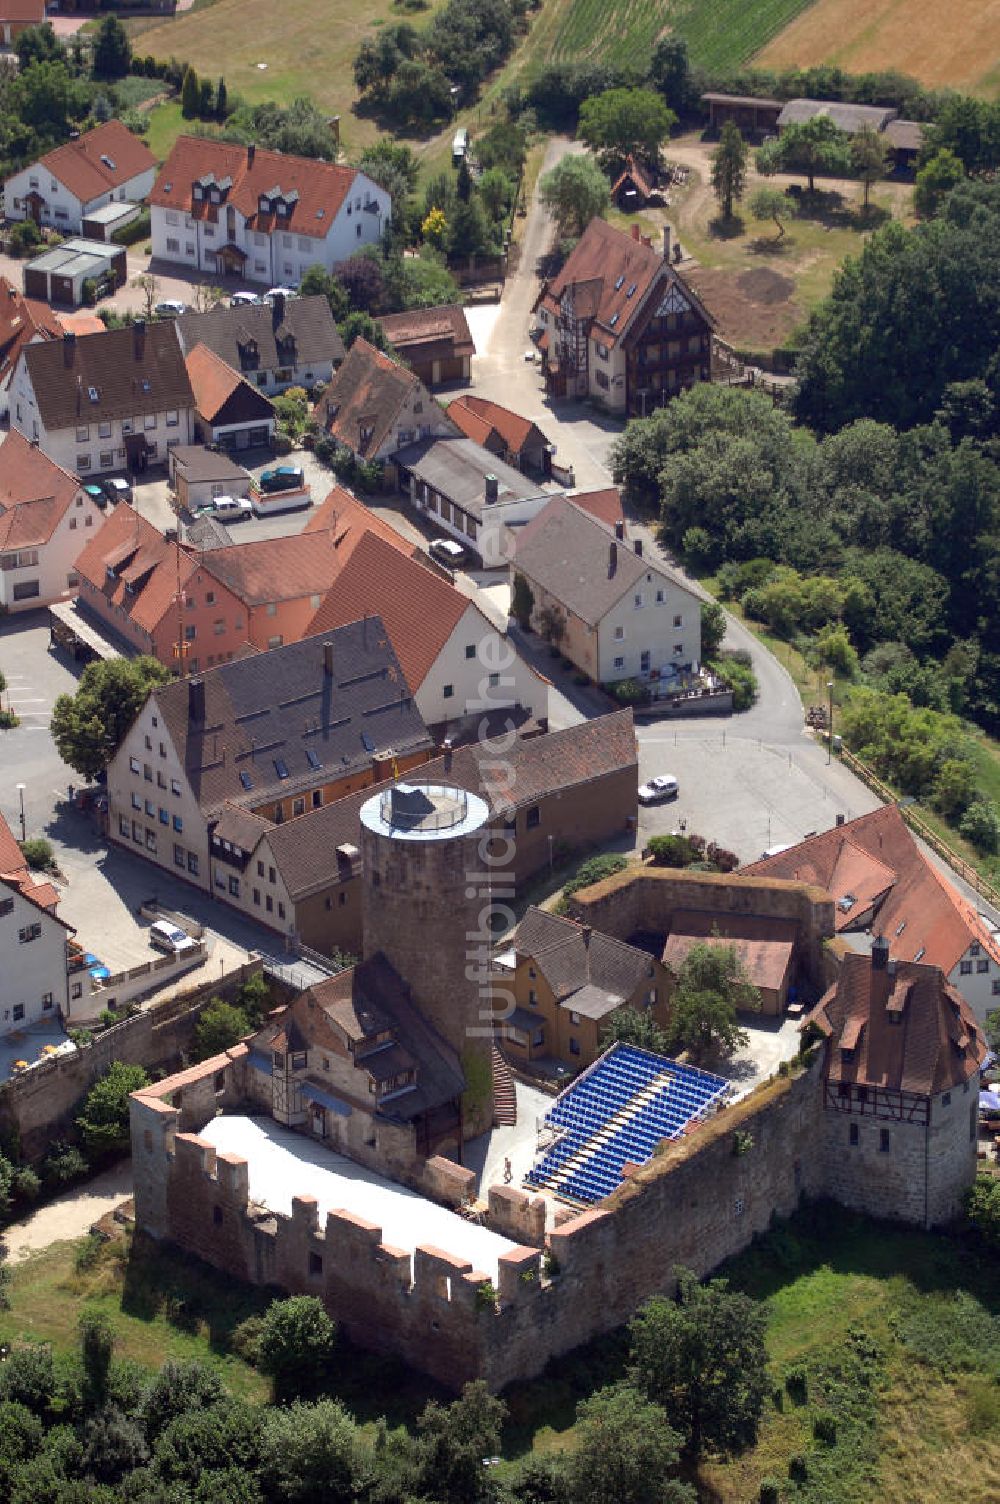 Luftbild Burgthann - Blick auf die Gemeinde Burgthann und die namensgebende Festung